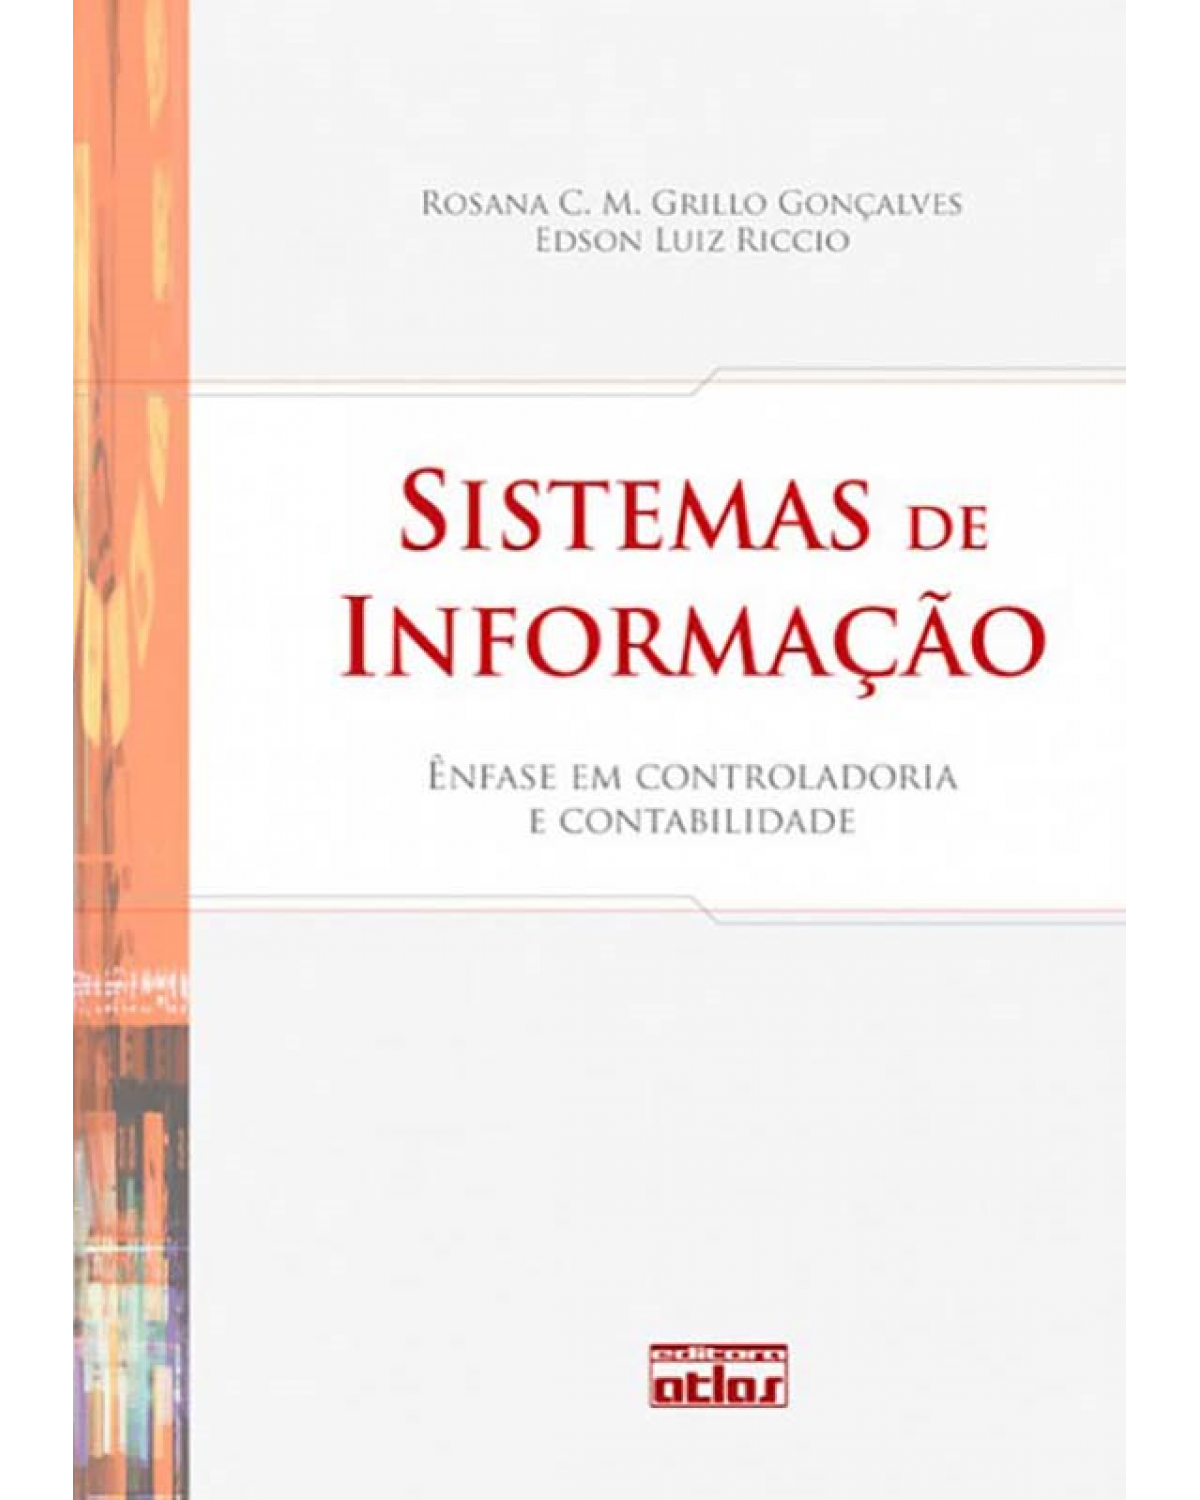 Sistemas de informação - Ênfase em controladoria e contabilidade - 1ª Edição | 2009